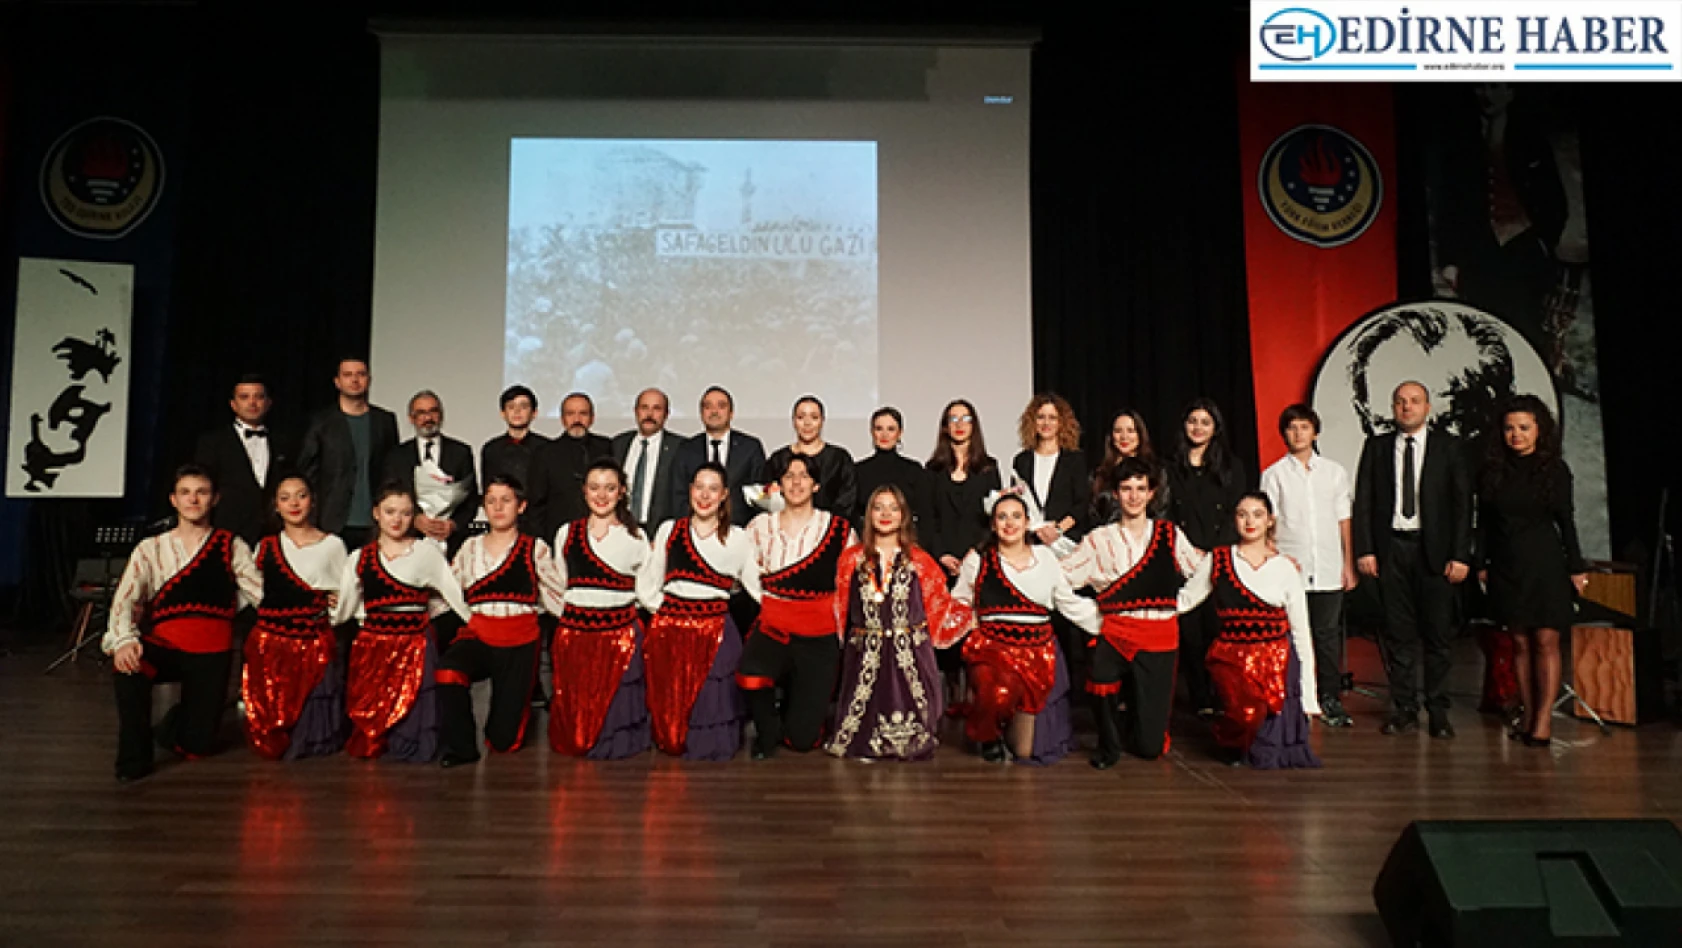 TED Edirne Koleji'nden Atatürk'ün Edirne'ye gelişinin 93. yıldönümüne özel konser